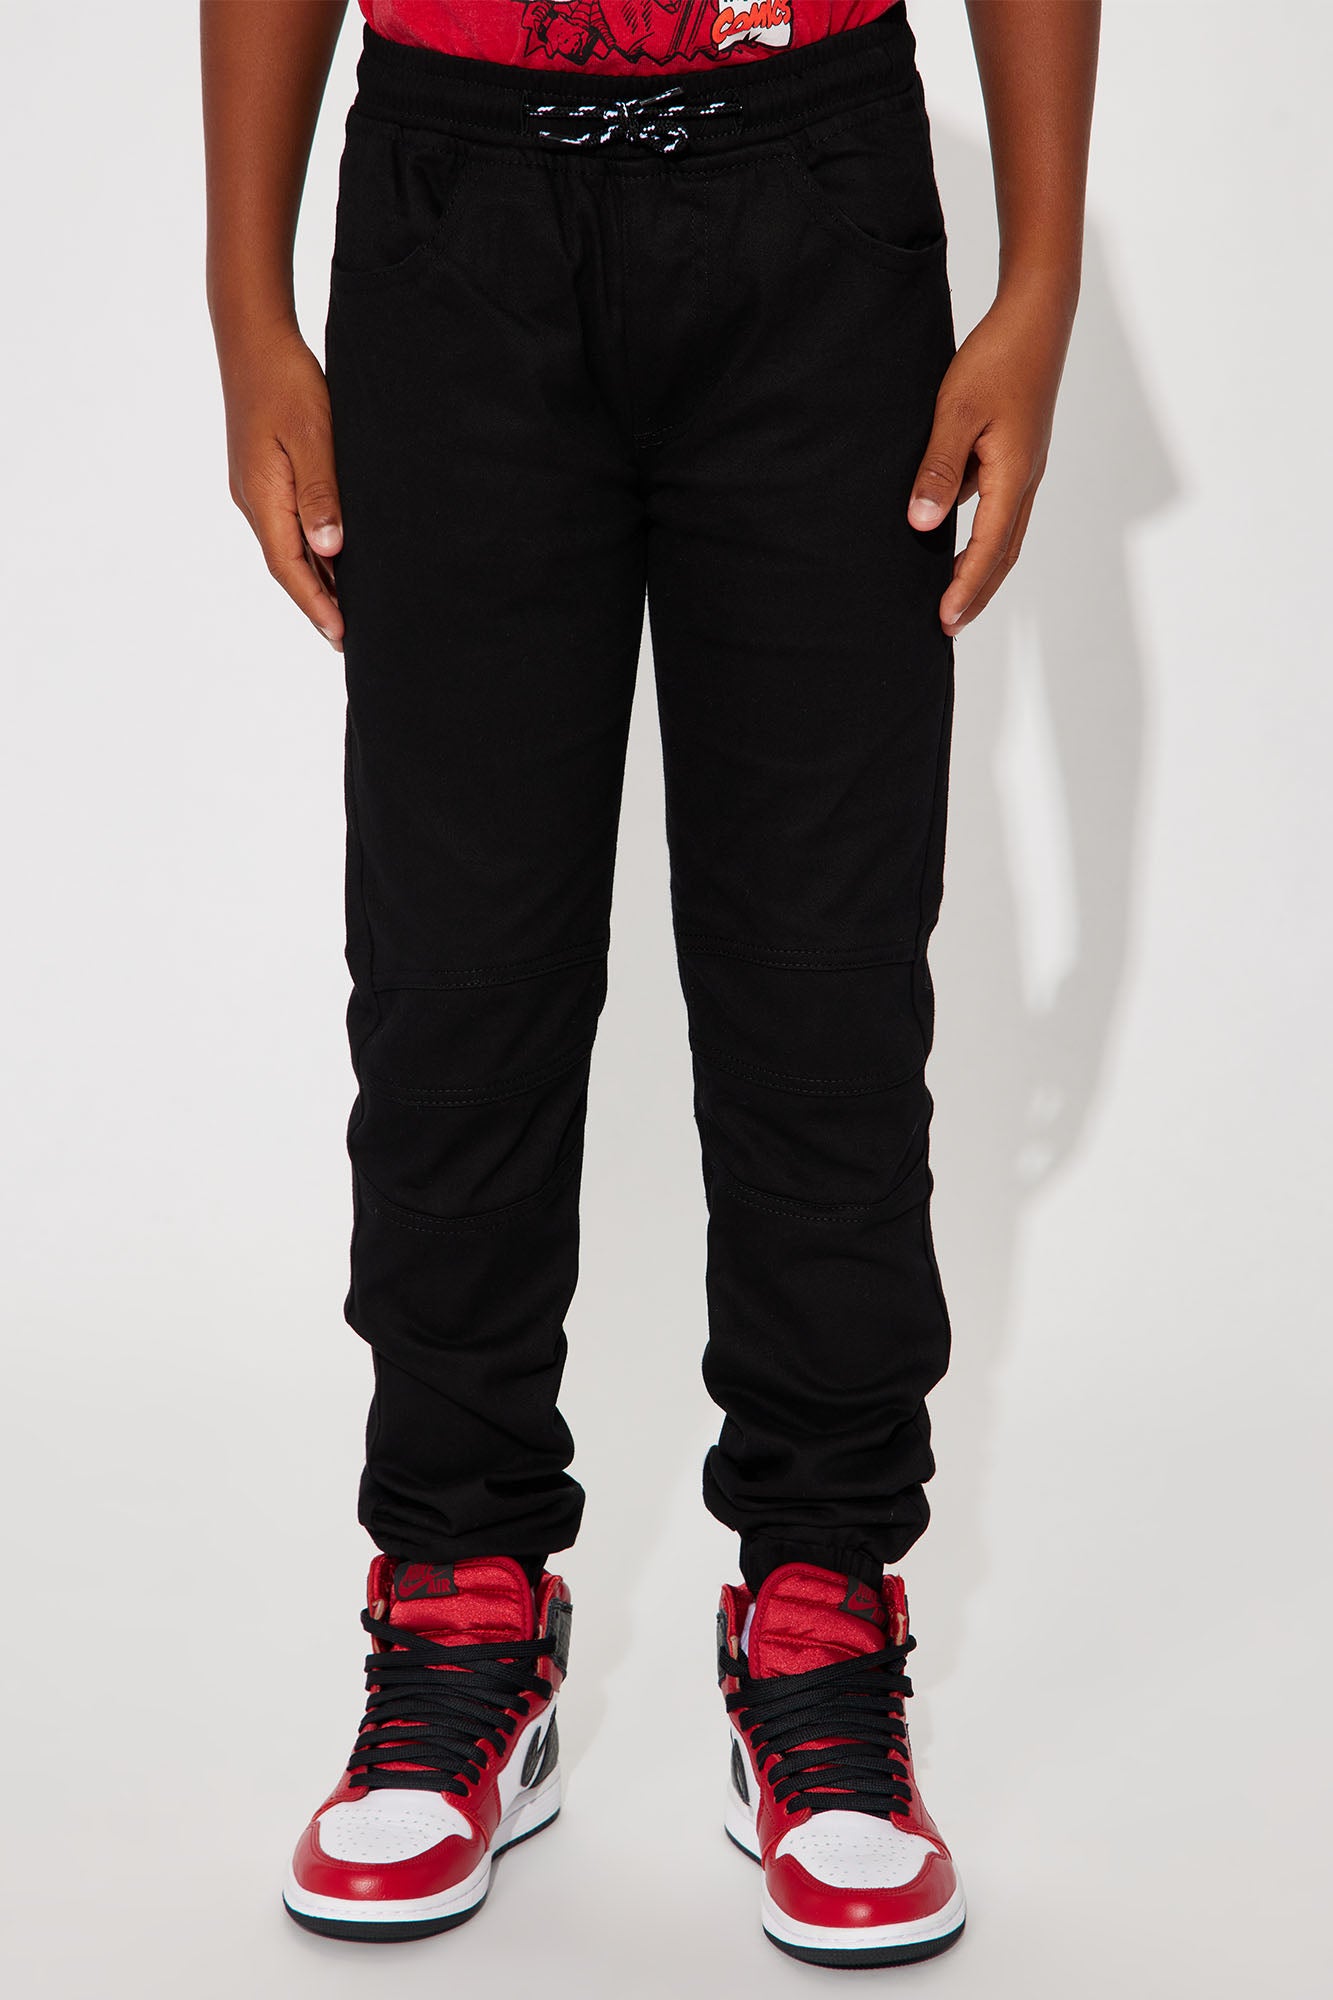 Mini Twill Moto Joggers - Black, Fashion Nova, Kids Pants & Jeans